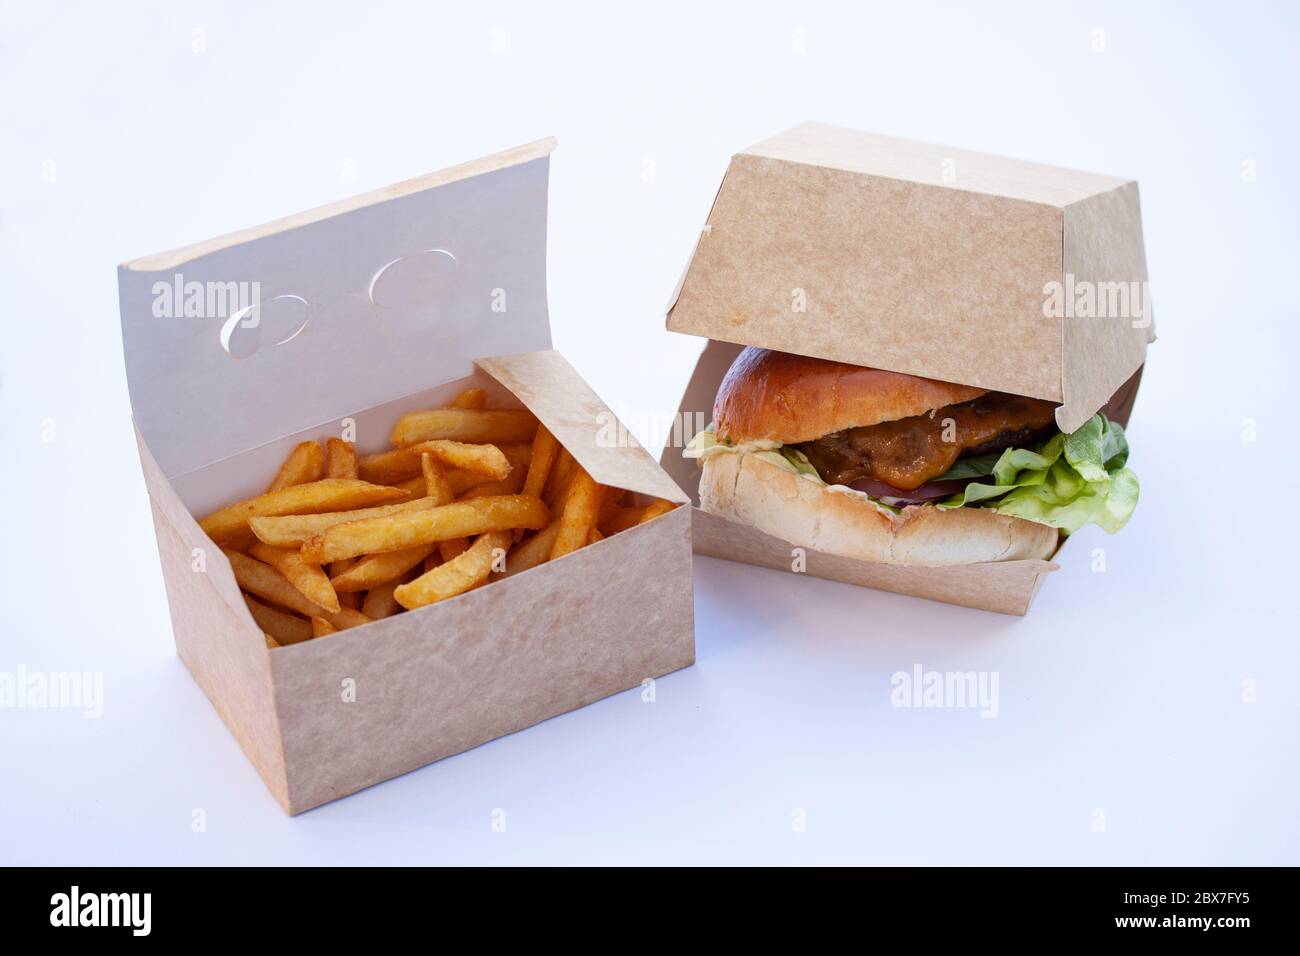 Leckere knusprige pommes Frites und ein großer saftiger Burger. In offenen Boxen aus nachhaltiger Pappe. Auf weißem Hintergrund. Stockfoto